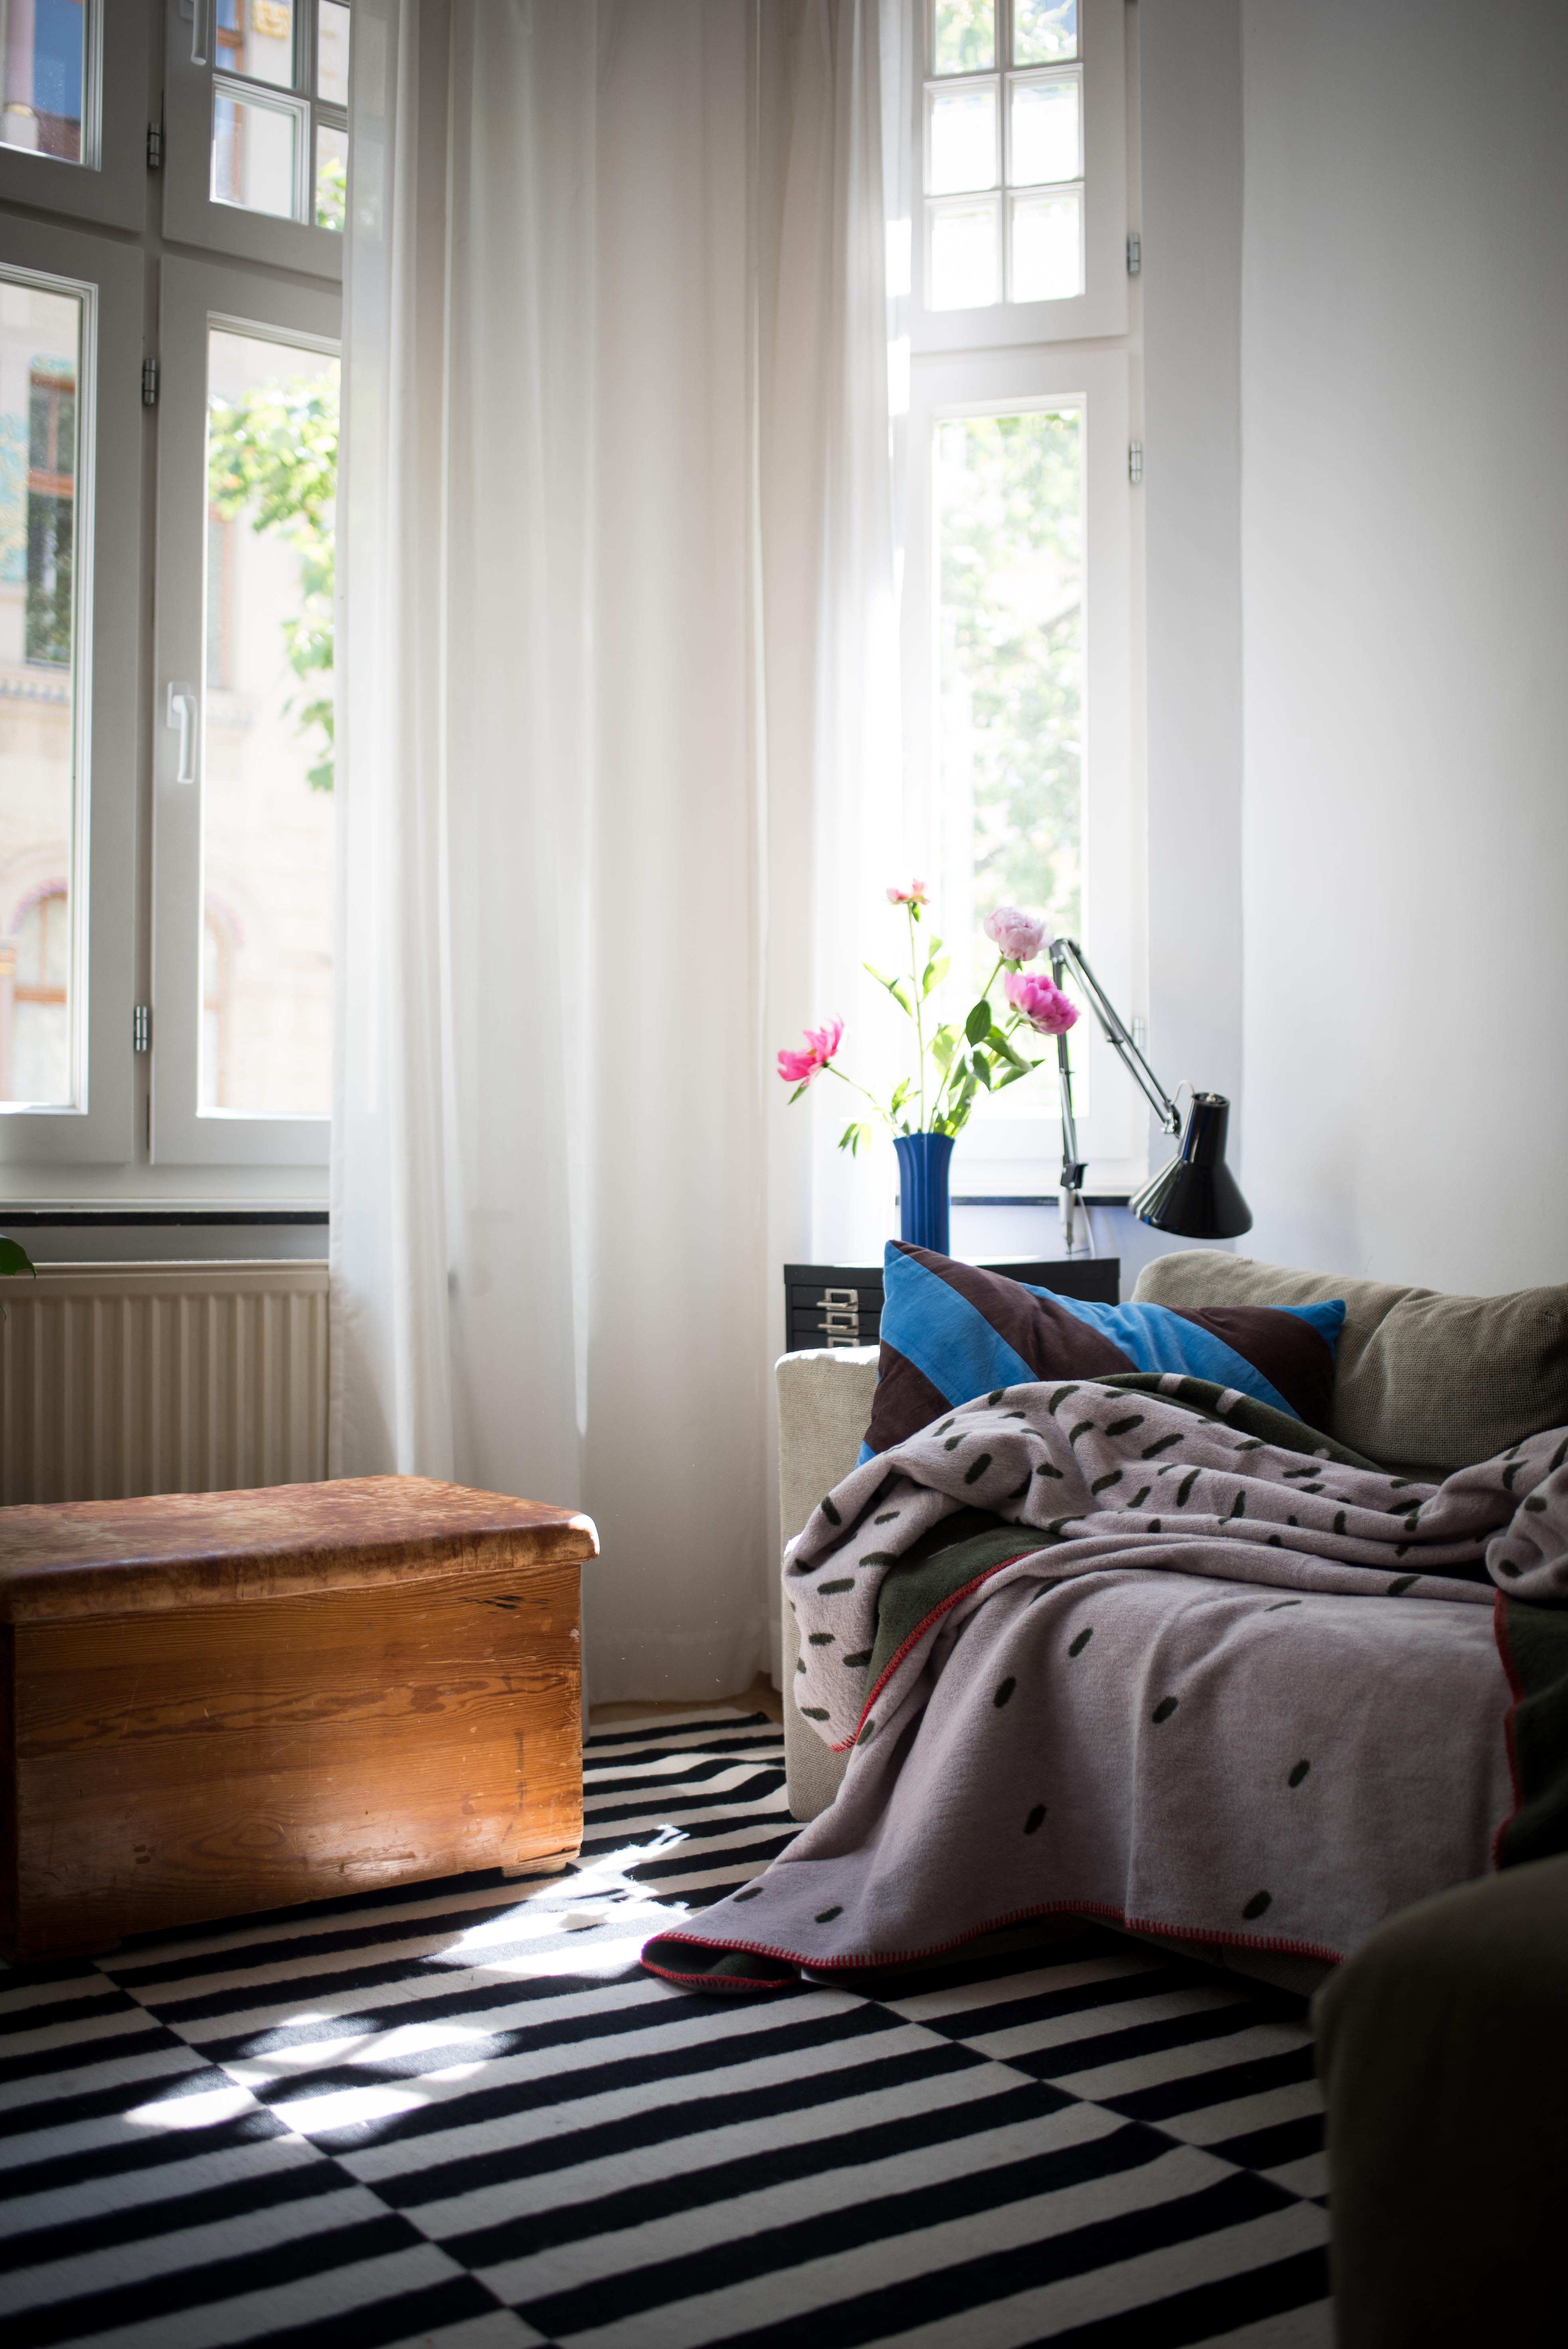 Sonnigen Dienstag! #livingroom #altbau #interiordesign #cozycorner #wohnzimmer #kuschelecke #vintage